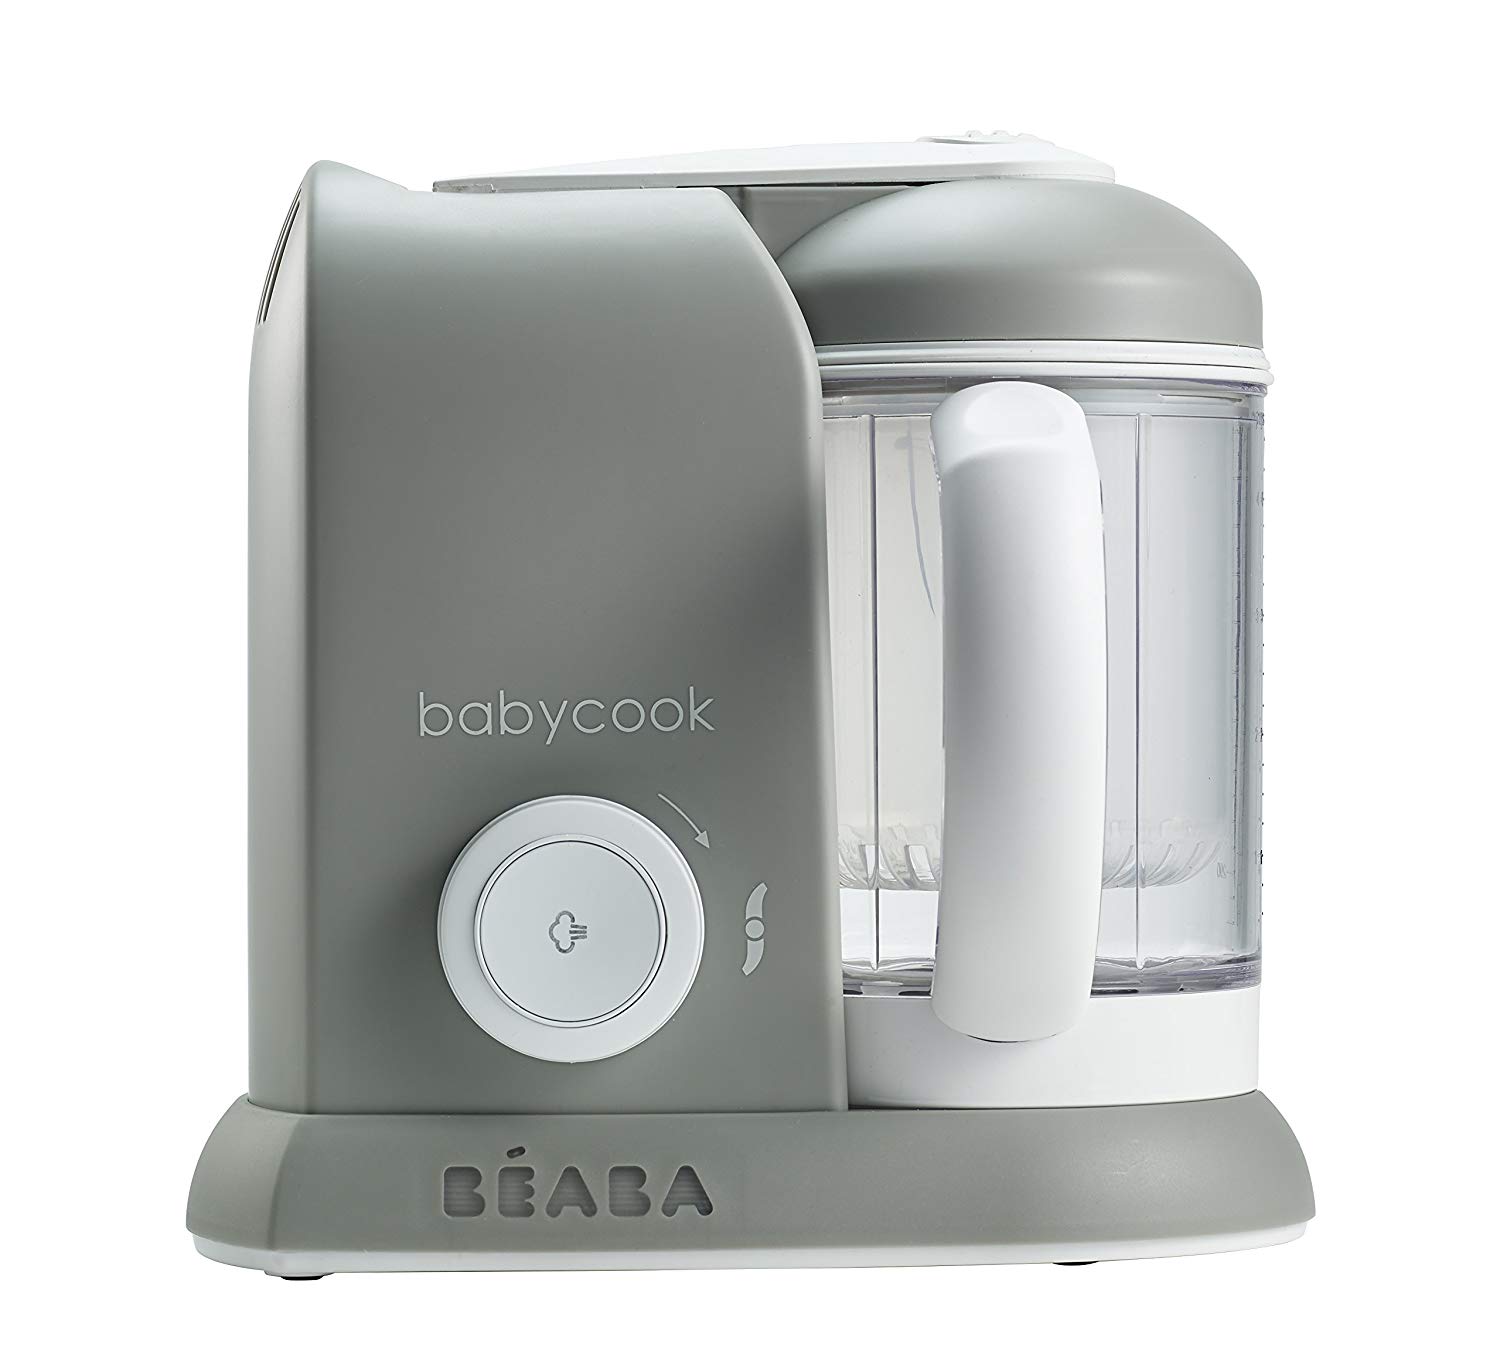 Beaba Babycook 4-in-1 Steam Cooker & Blender 